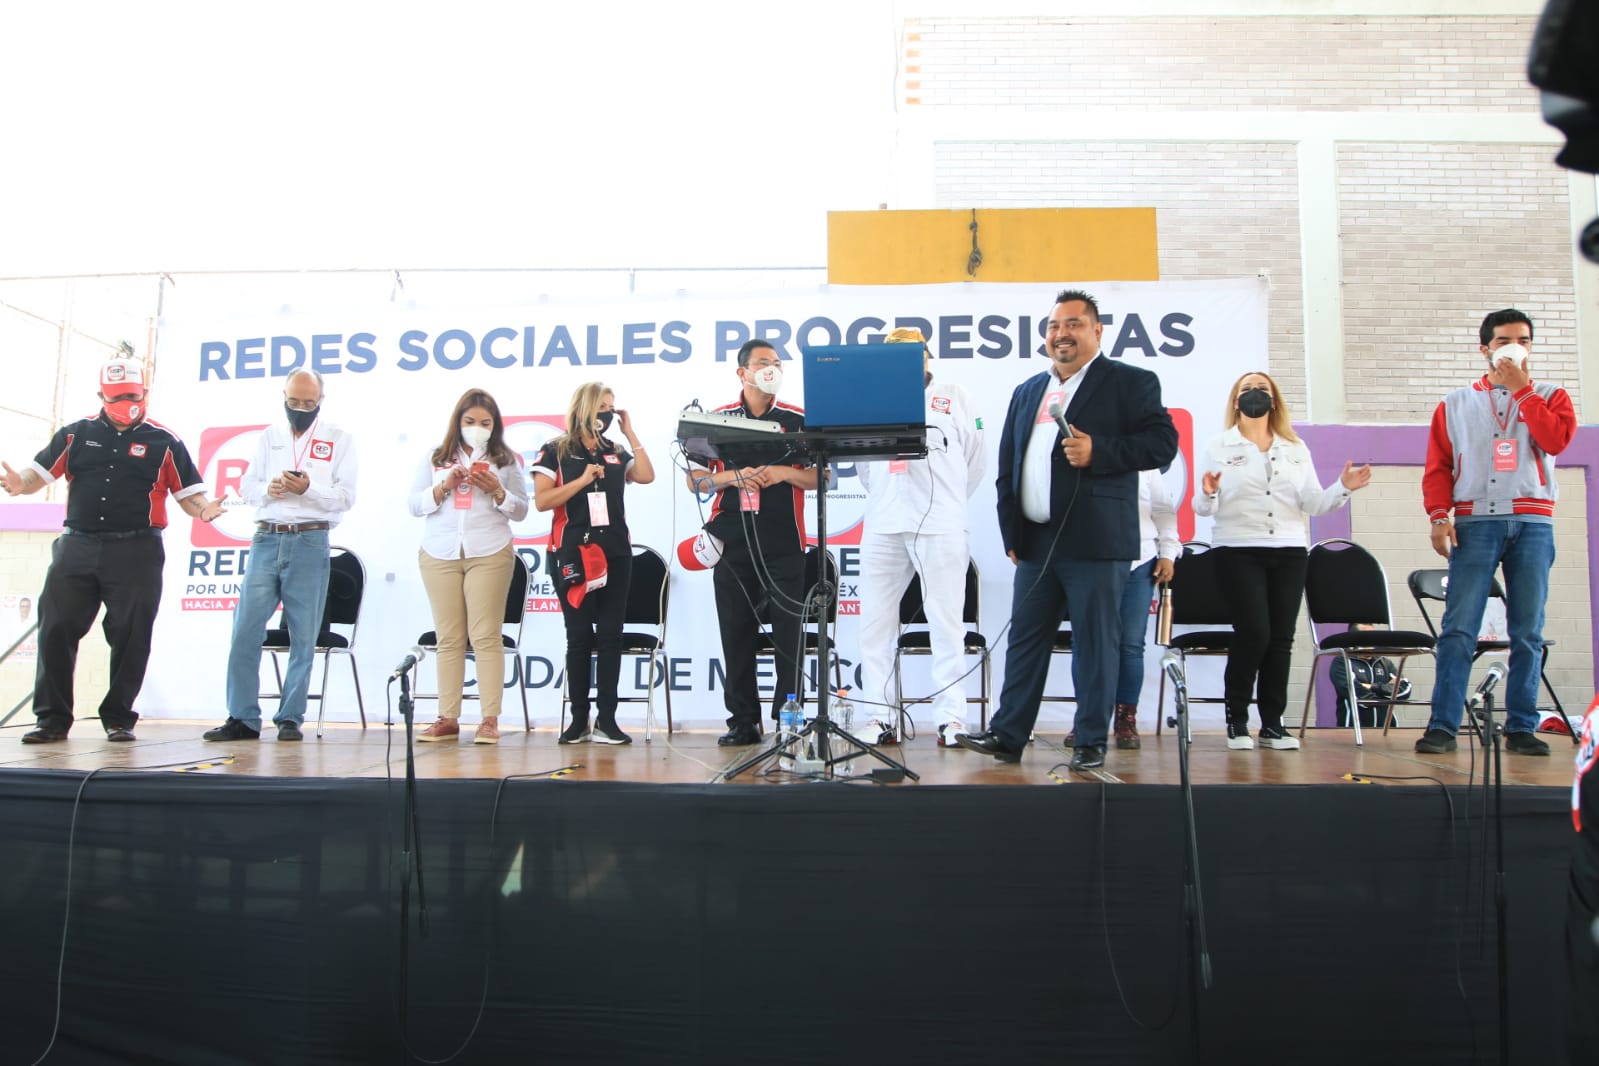 La patria se construye democráticamente buscando el consenso: Fernando González